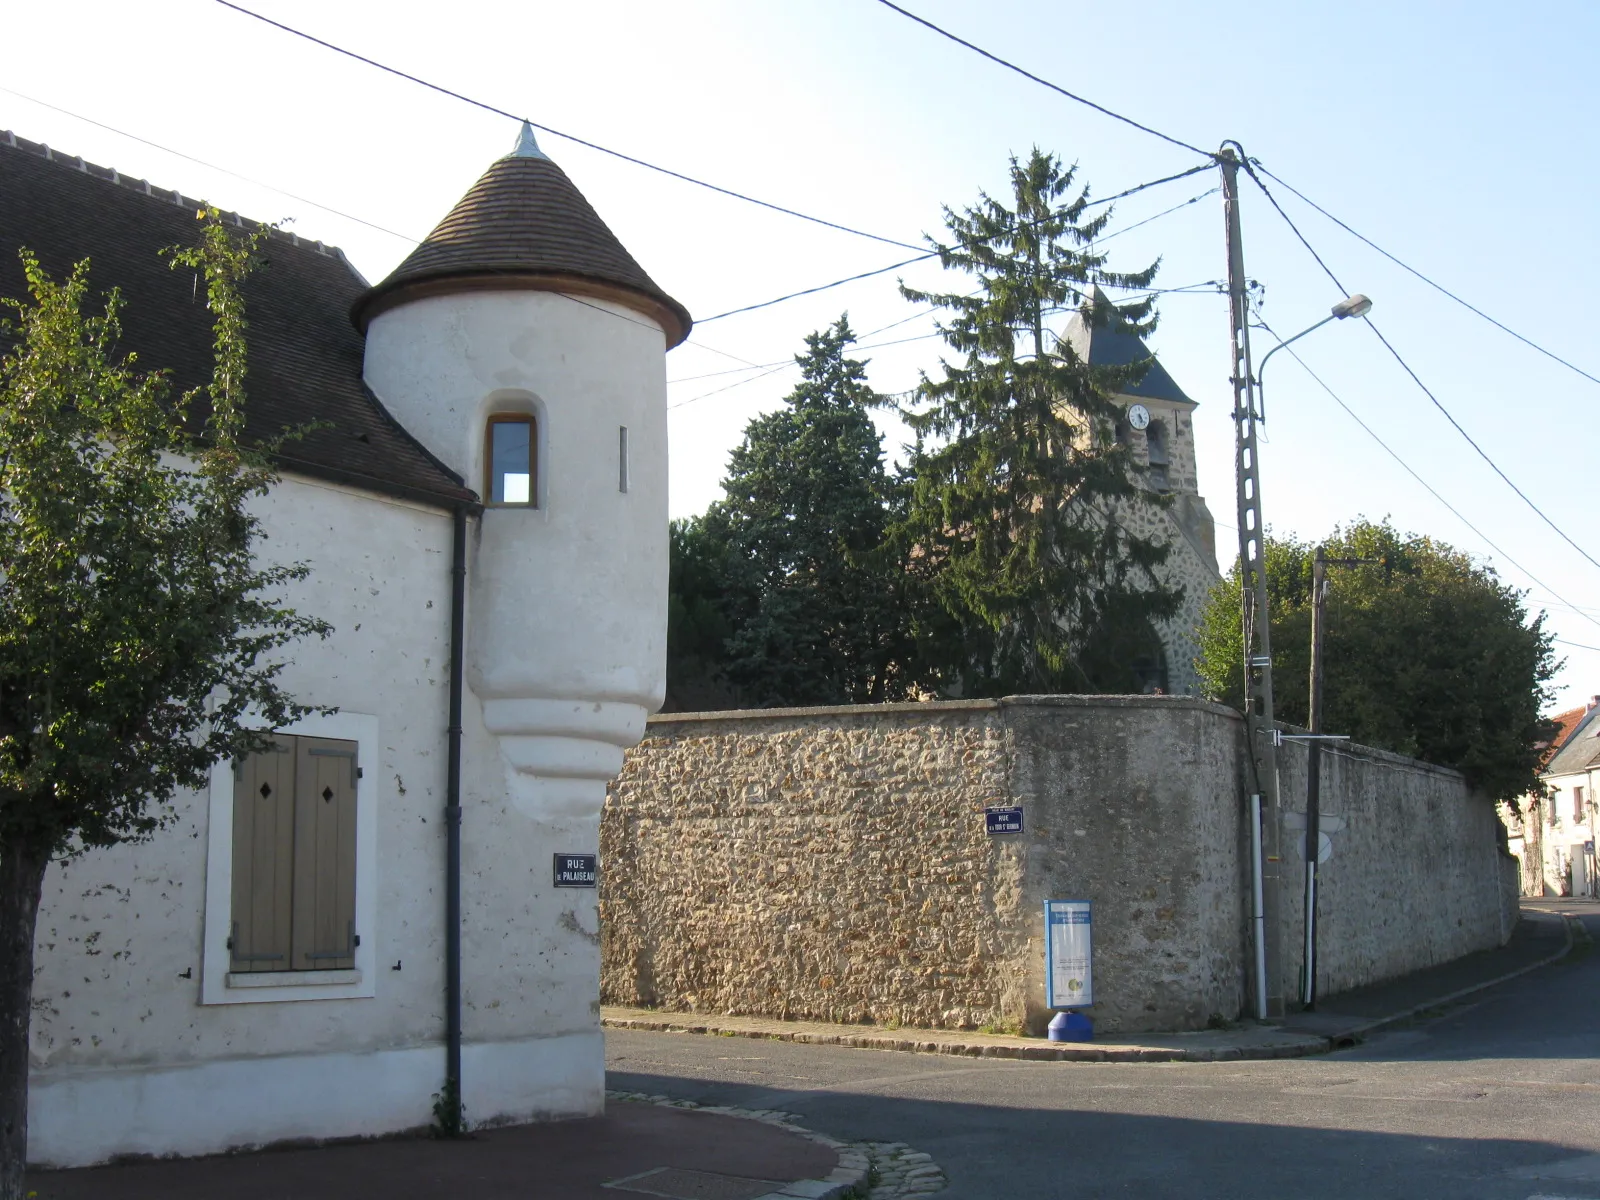 Photo showing: La maison à échauguette de Saclay (début de la Renaissance) et l'église Saint-Germain en arrière plan.